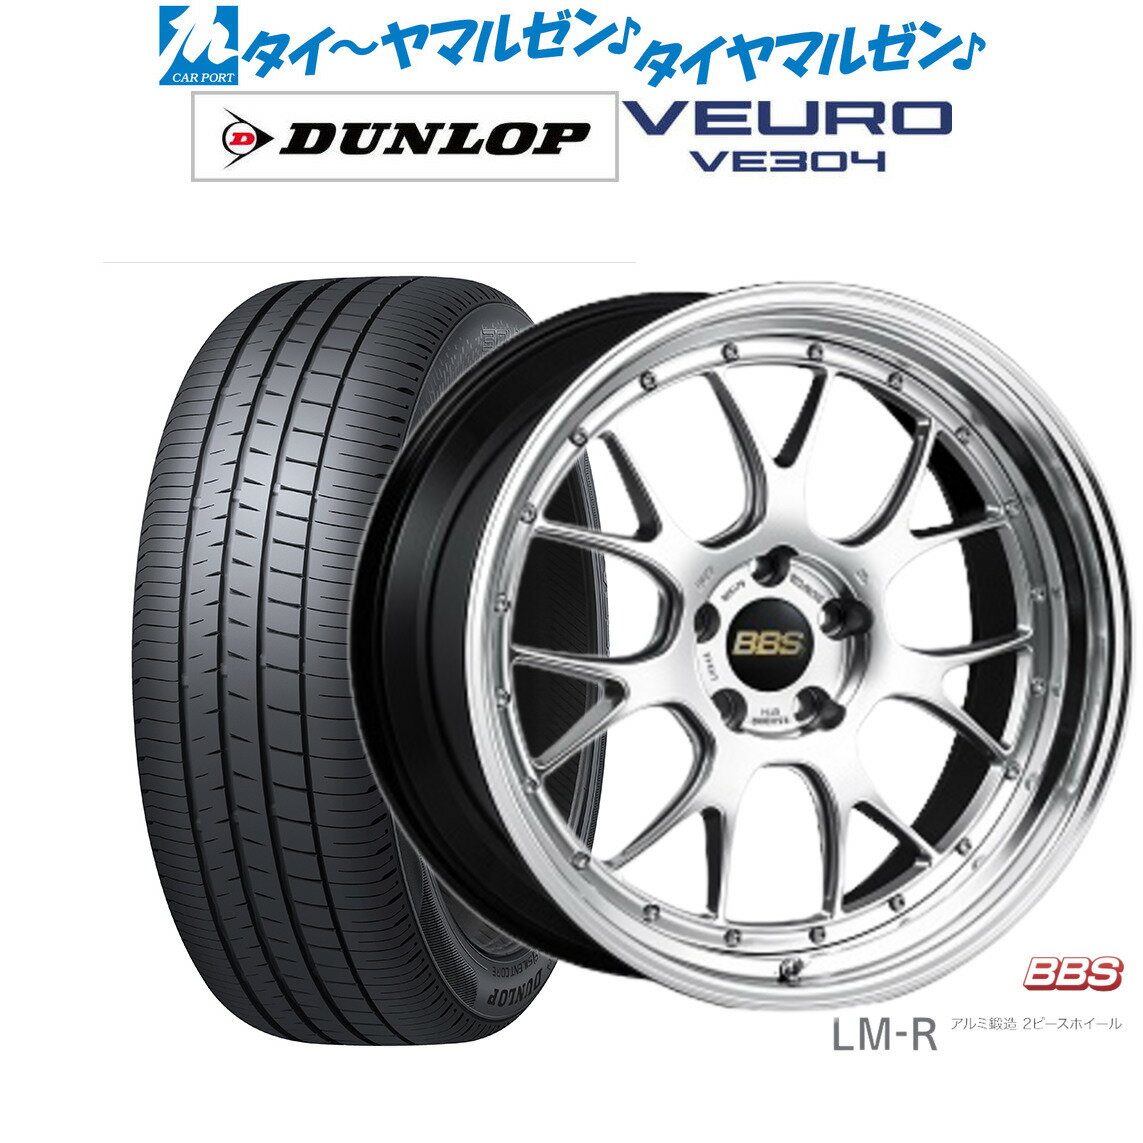 新品 サマータイヤ ホイール4本セットBBS JAPAN LM-R20インチ 8.5Jダンロップ VEURO ビューロ VE304245/35R20